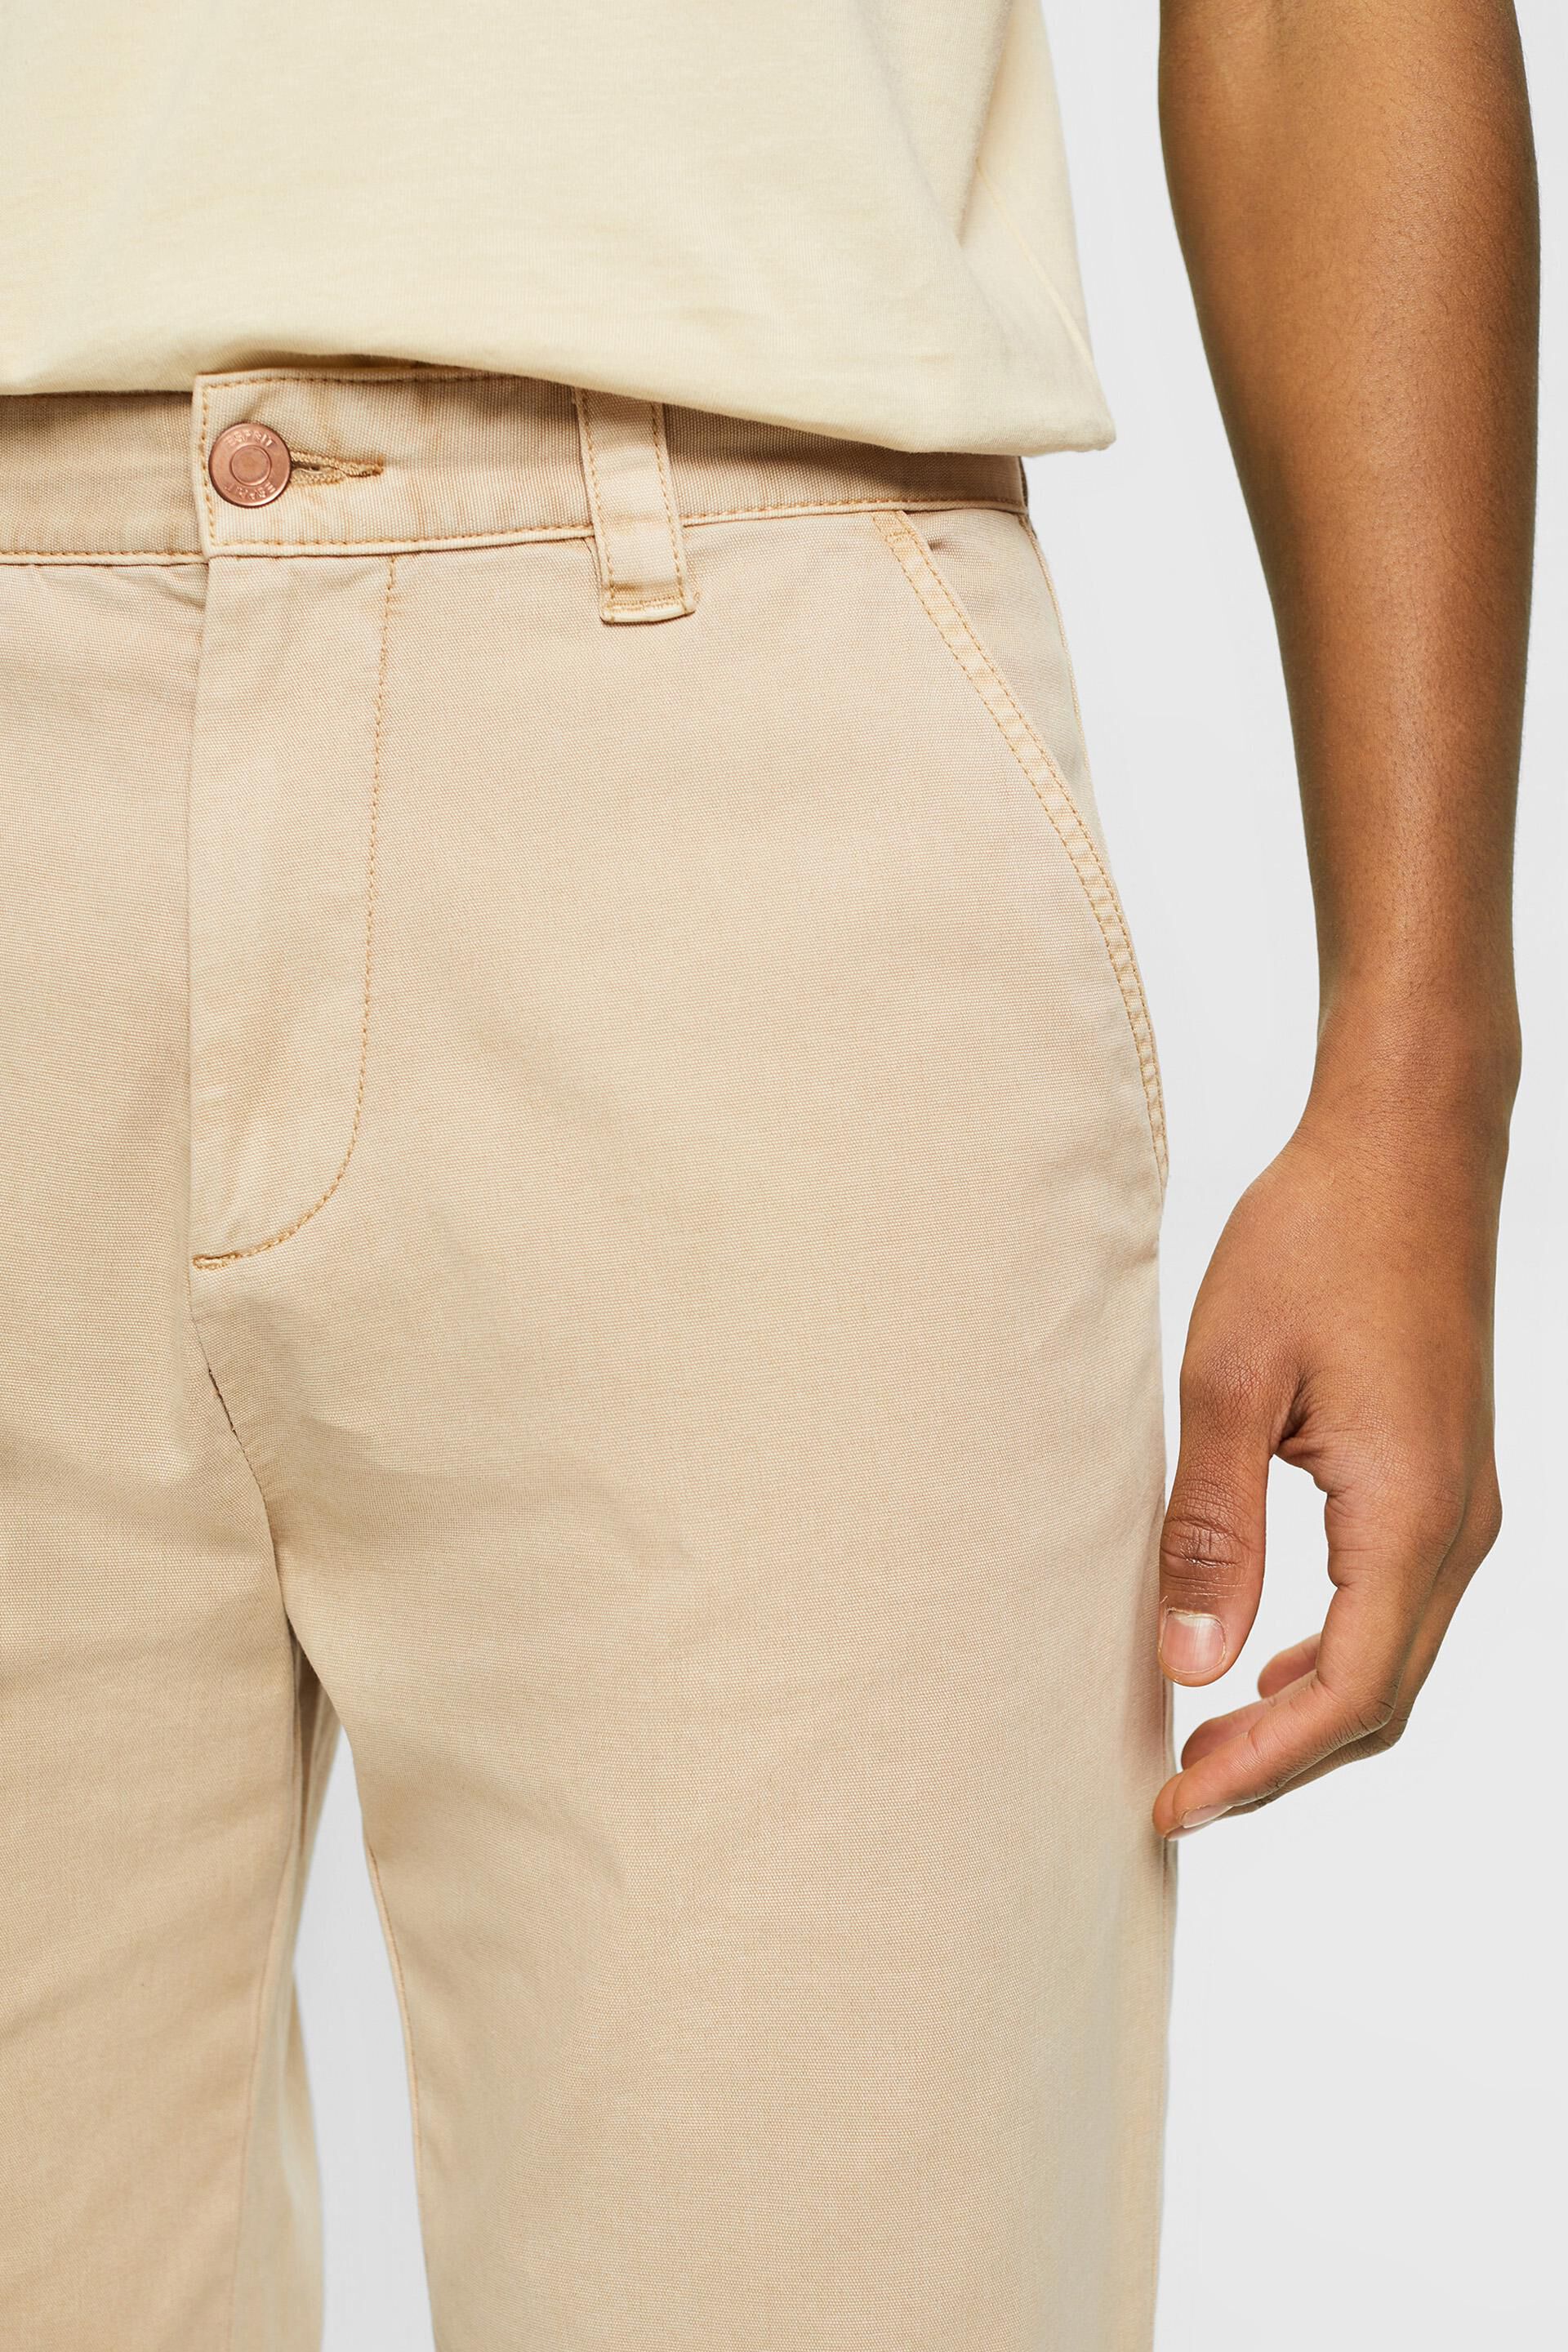 Shop the Latest in Men's Fashion Pants, Denim Cargo Pants, Sweatpants |  ESPRIT Australia Official Online Store